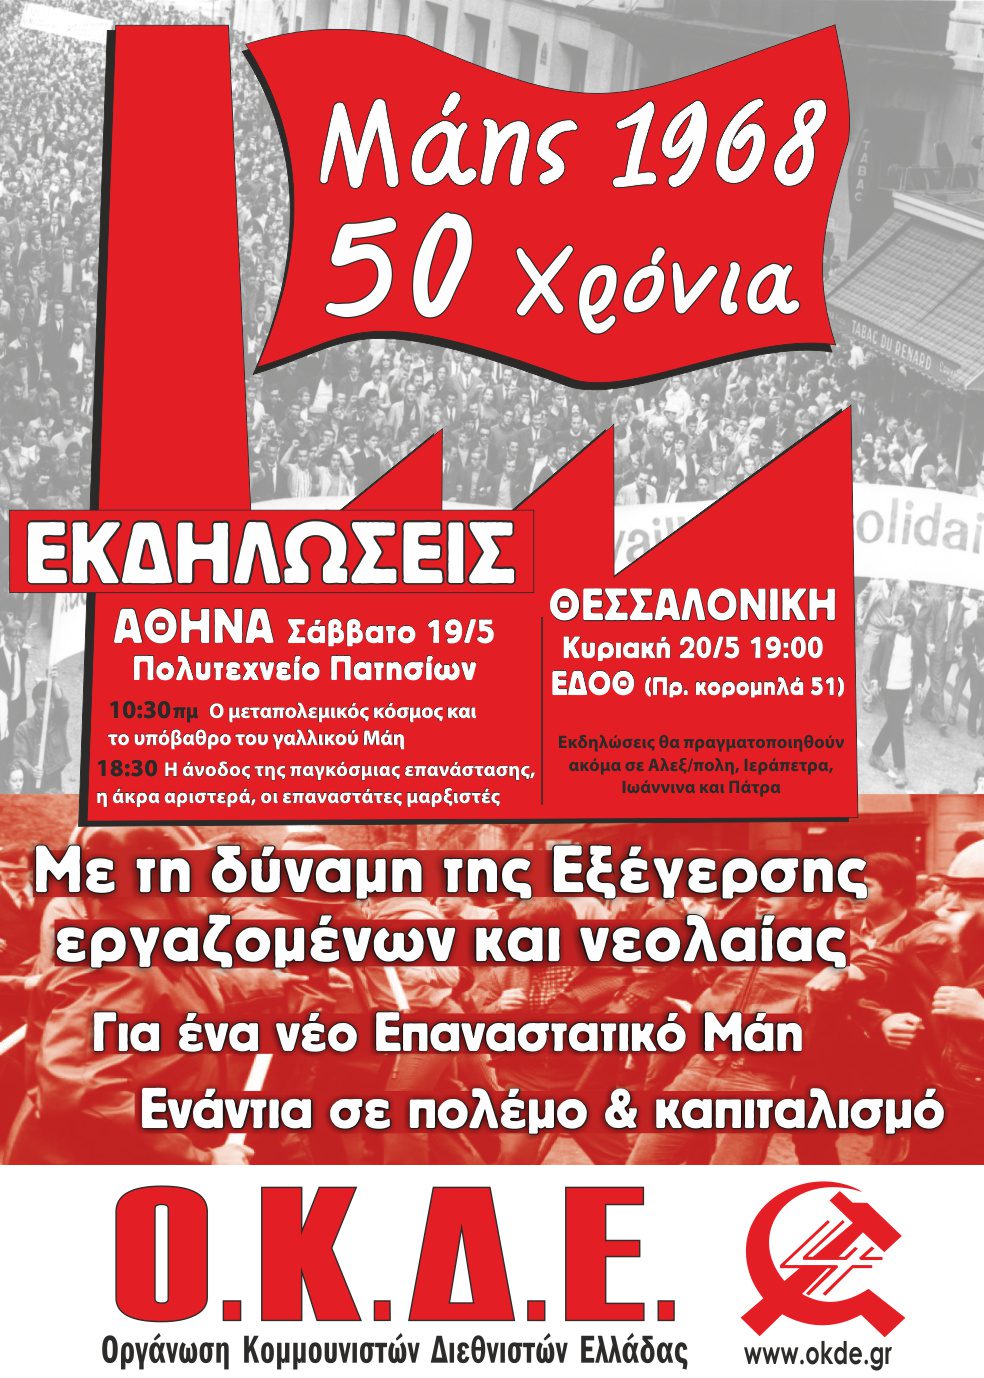 50 χρόνια από τον Μάη του 1968. Με τη δύναμη της Εξέγερσης εργαζομένων & νεολαίας, για ένα νέο επαναστατικό Μάη! Κύκλος εκδηλώσεων της ΟΚΔΕ